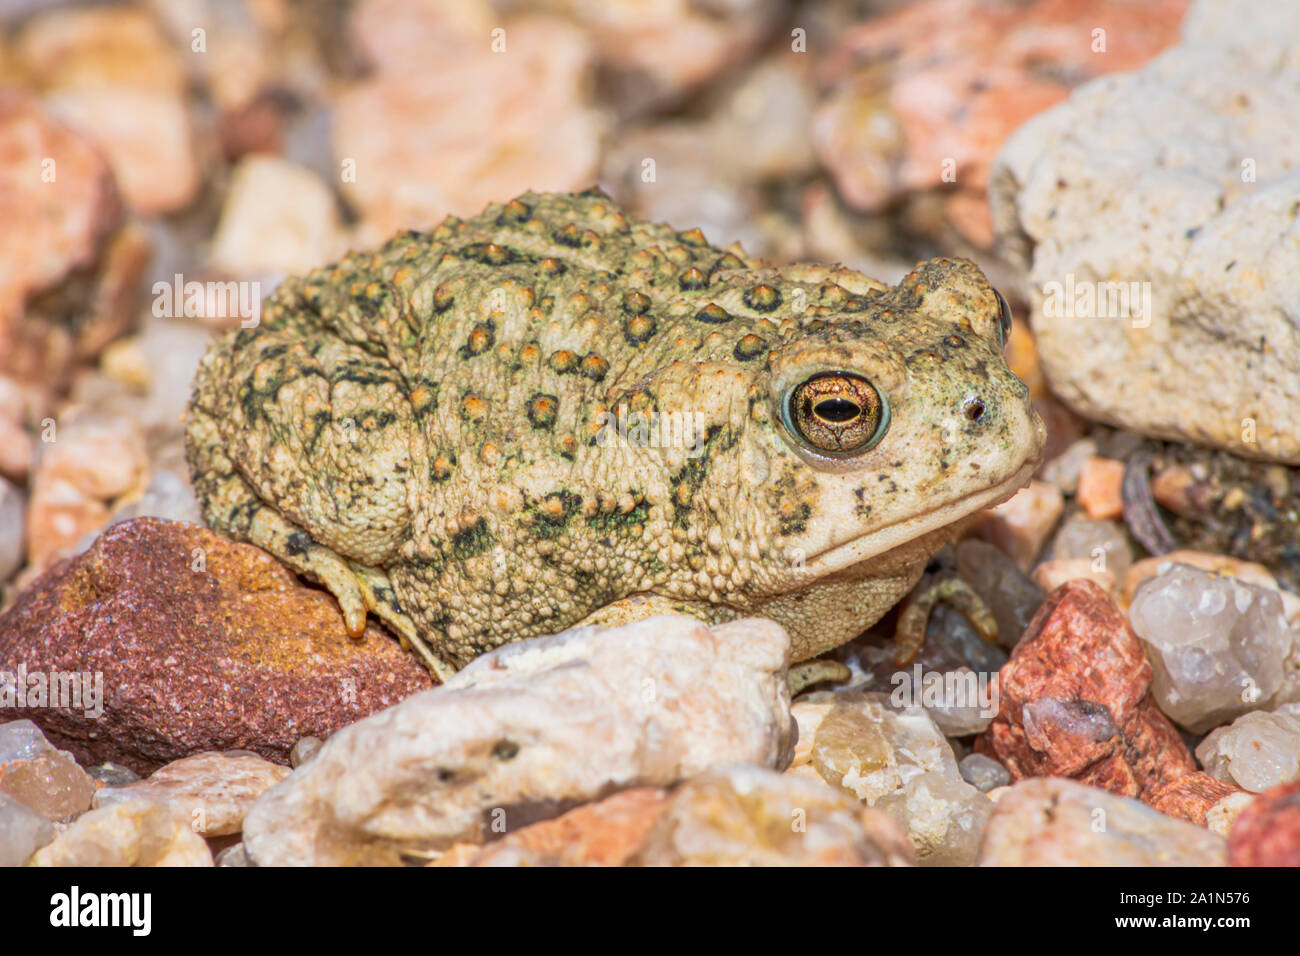 Tiny giovani Woodhouse's toad appena due pollici di lunghezza si trova in zona sabbiosa vicino oriente prugna Creek, Castle Rock Colorado US. Foto scattata in settembre. Foto Stock